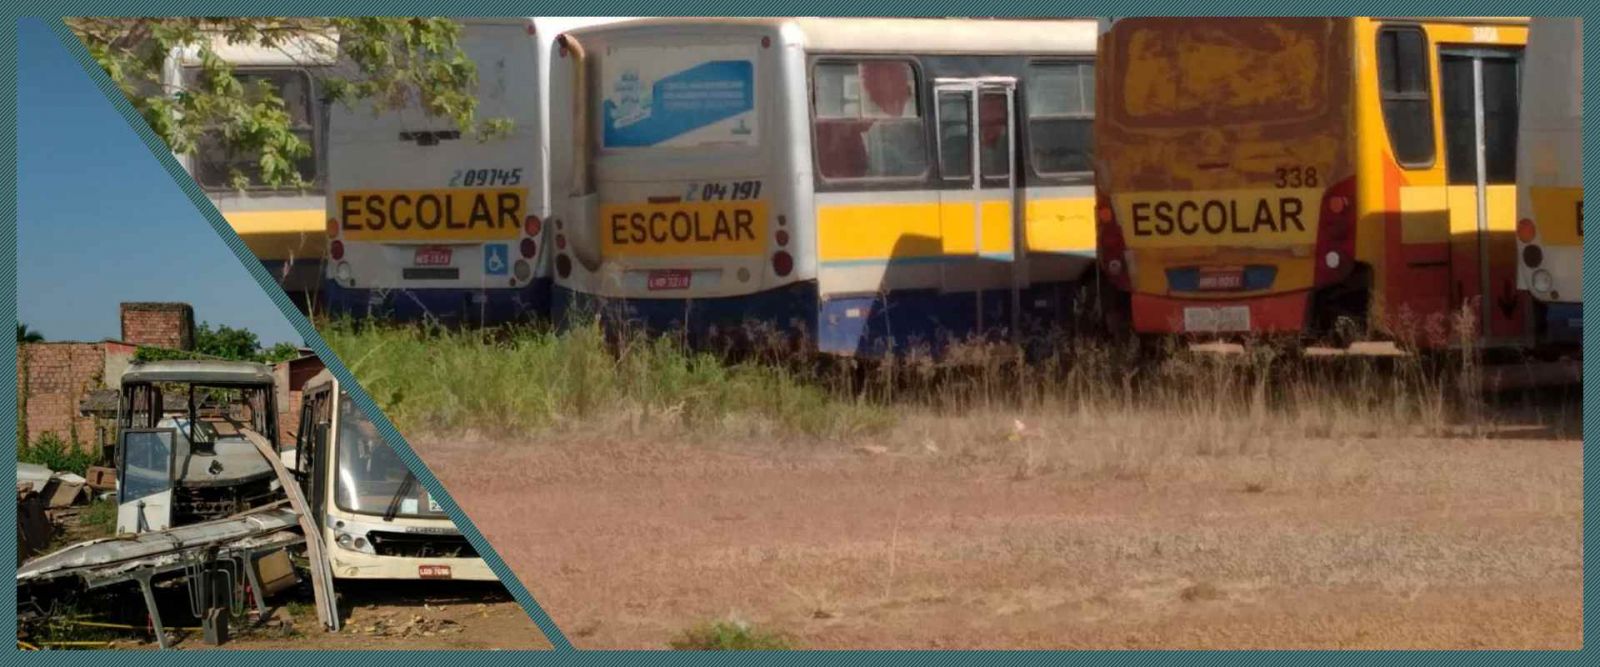 Ônibus do consórcio sim estão sendo vendido para desmanche em ferro-velho - News Rondônia